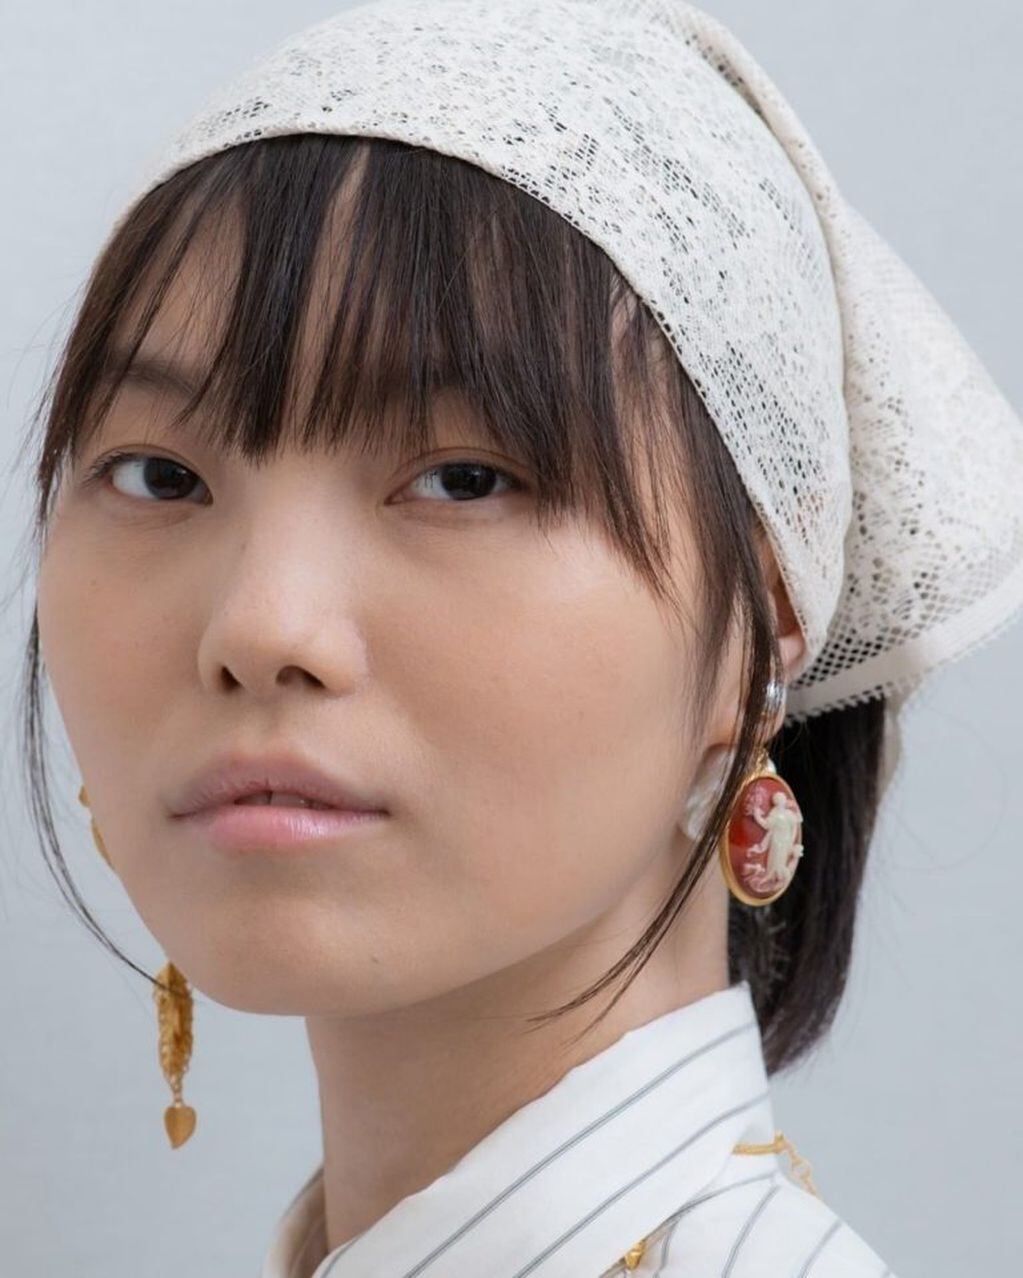 Tendencia de moda: pañuelos en la cabeza (Instagram)